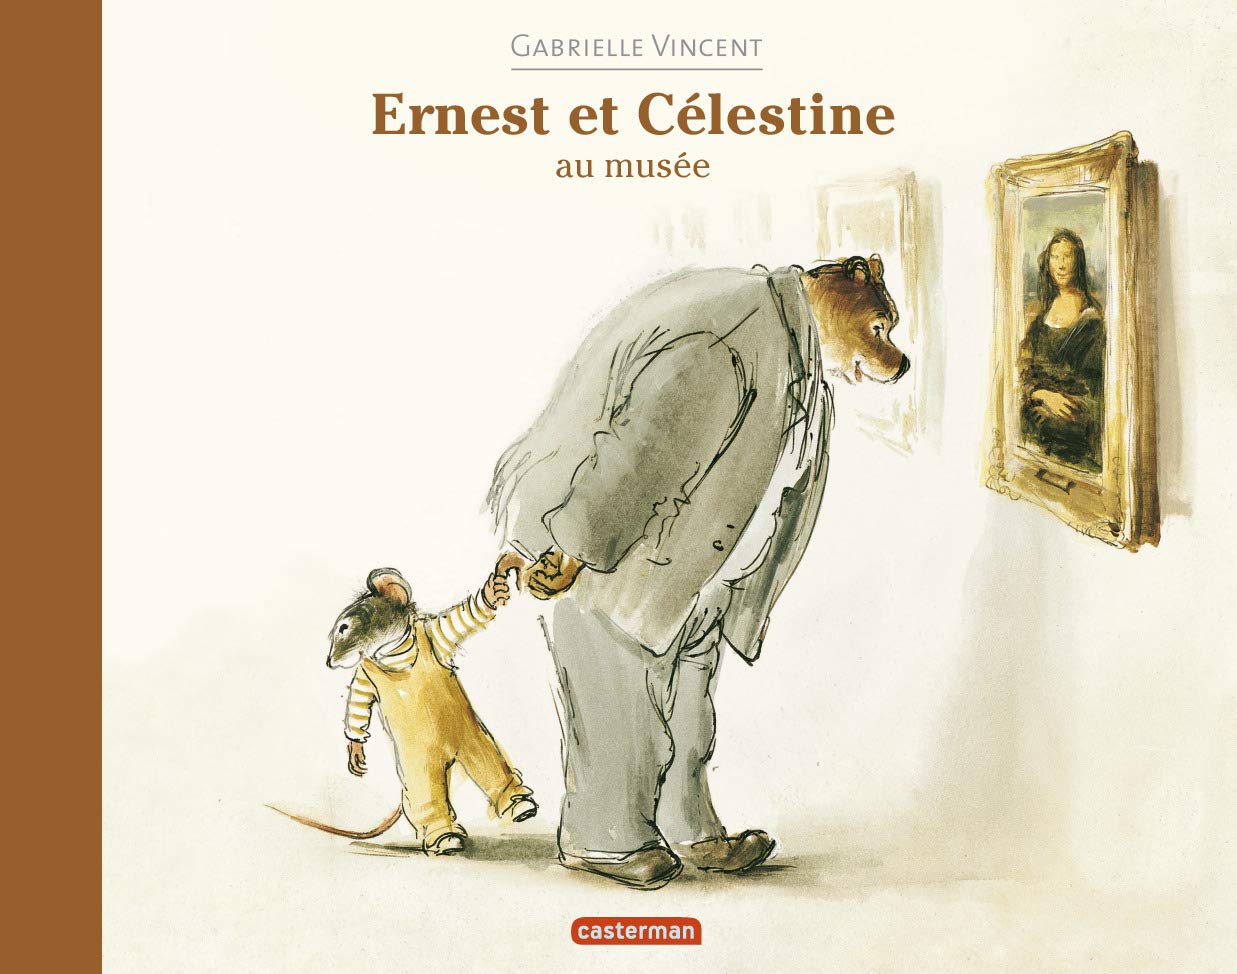 Ernest et Celestine au musee | Gabrielle Vincent